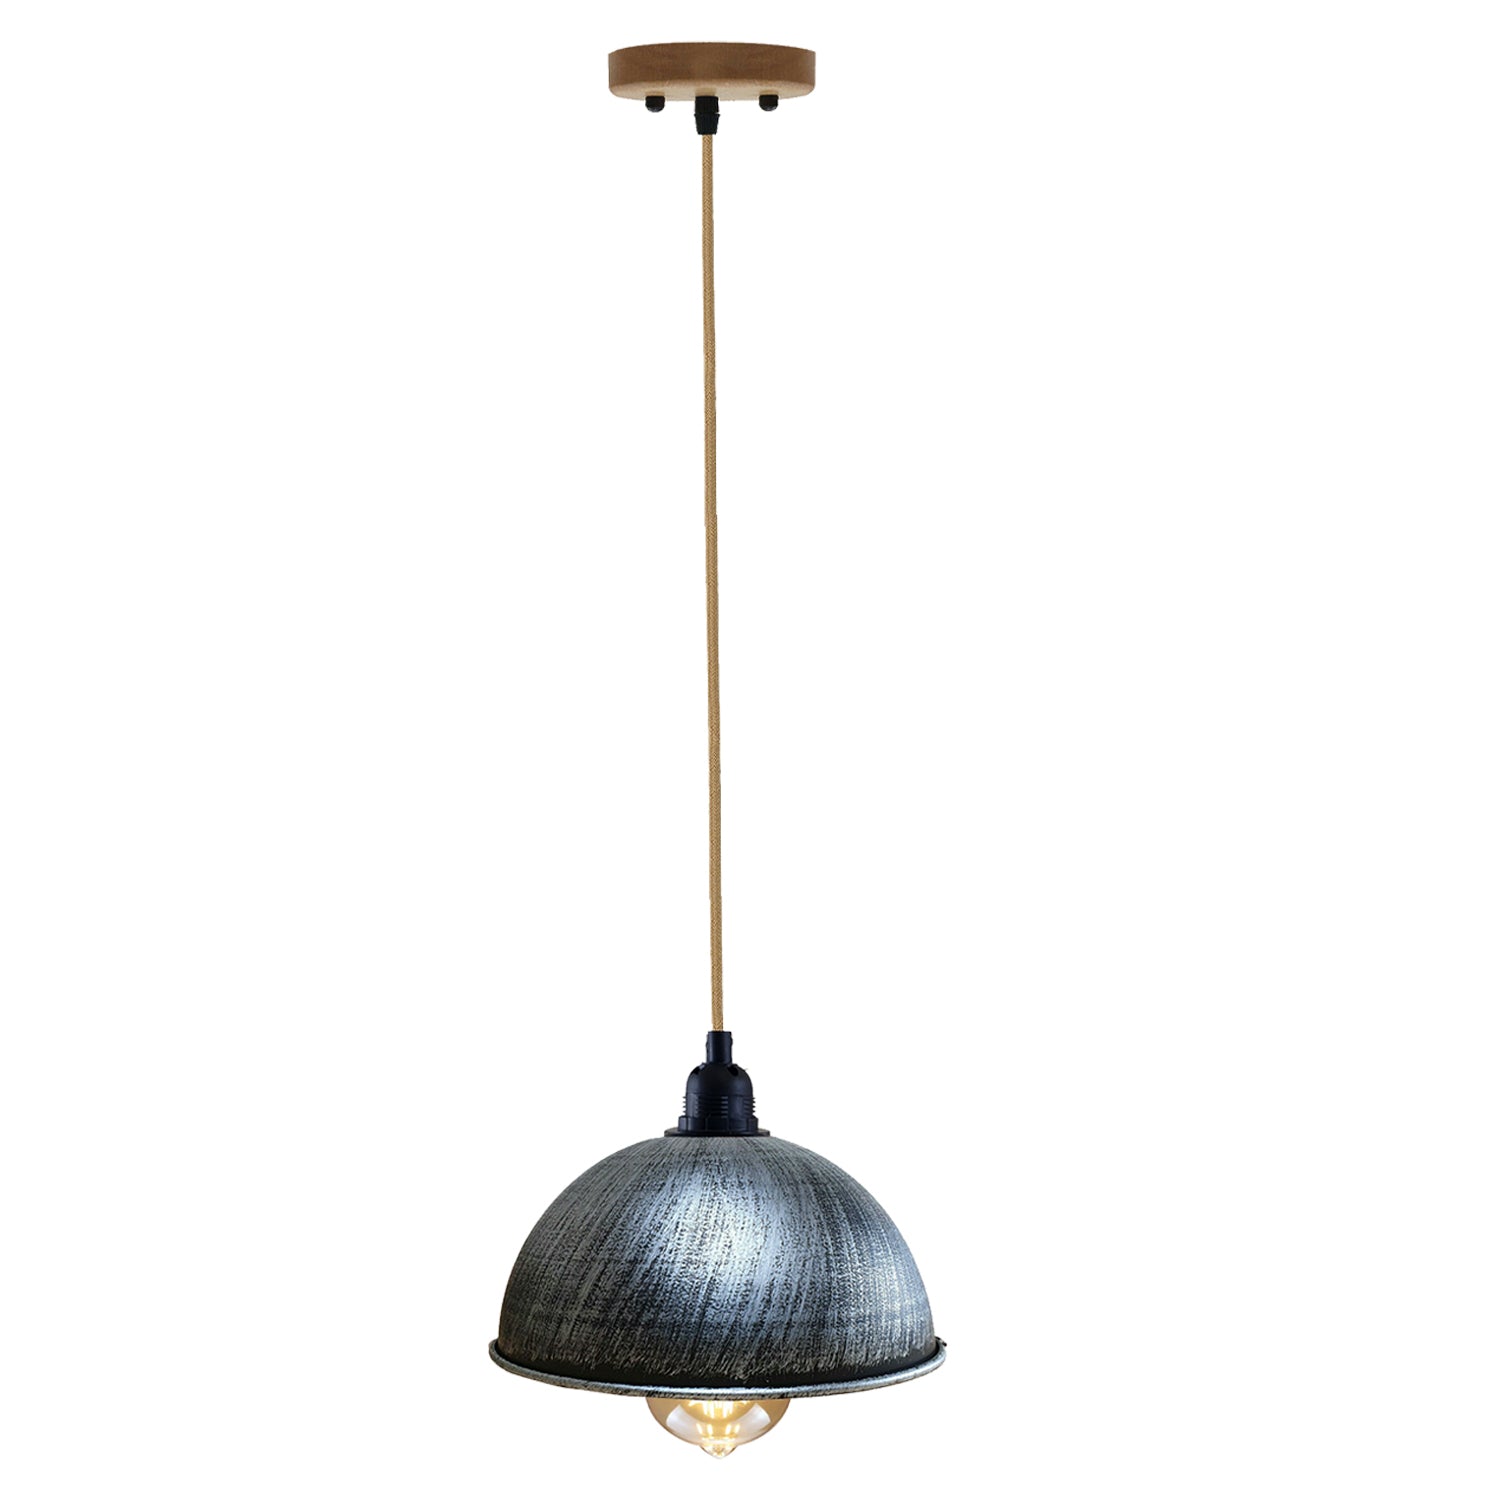 Vintage Industrial Decke Hanf Pendelleuchte Retro-Stil Lampenschirm aus Metall - gebürstetes Silber